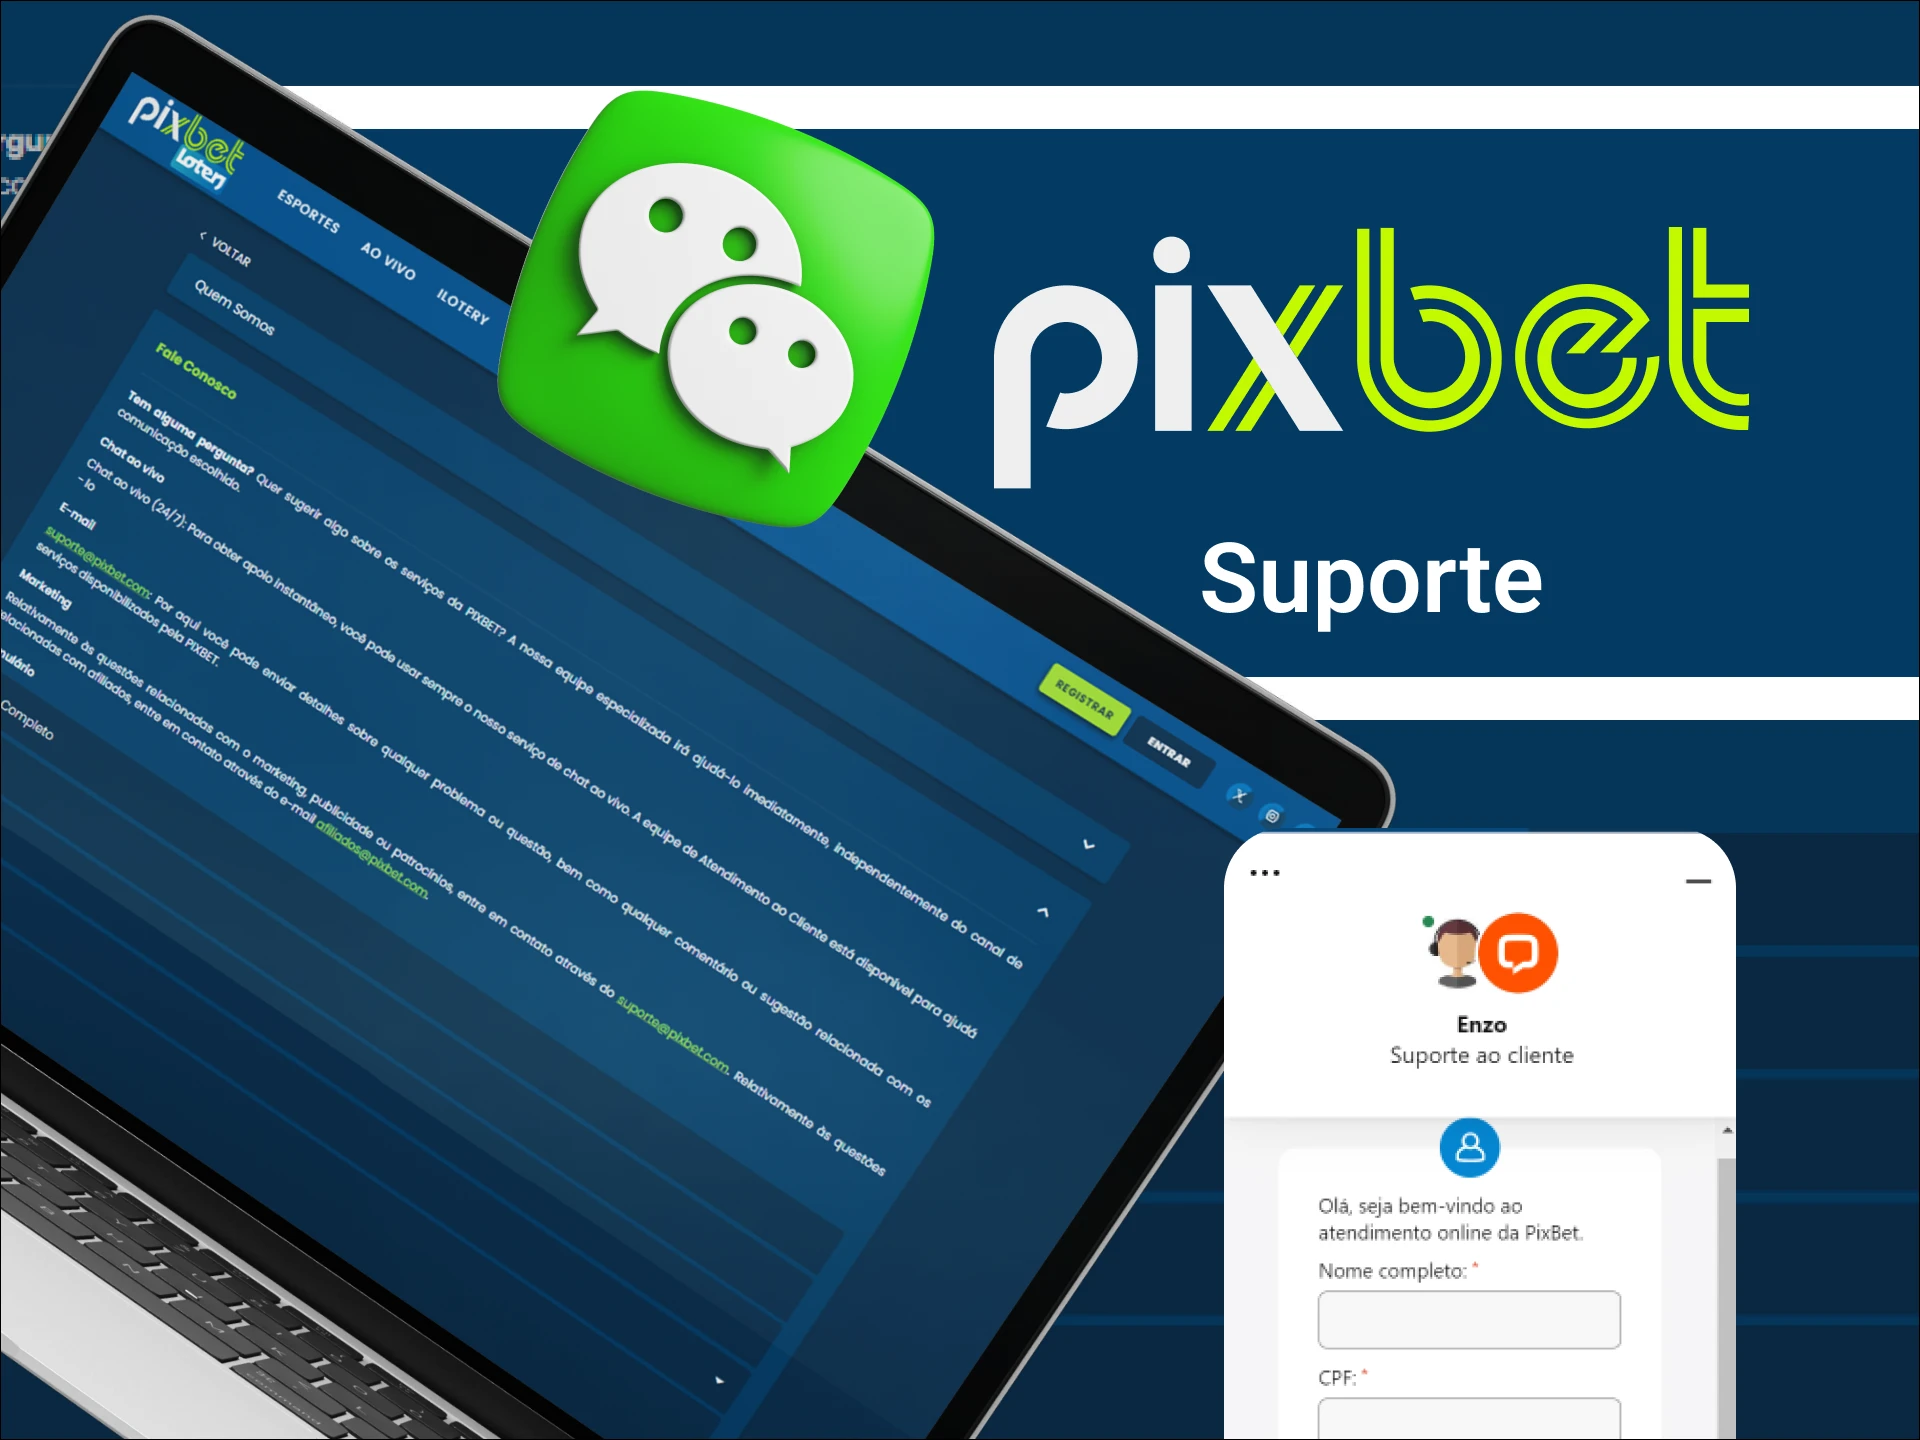 Como posso entrar em contato com o suporte ao cliente no site do cassino online Pixbet.